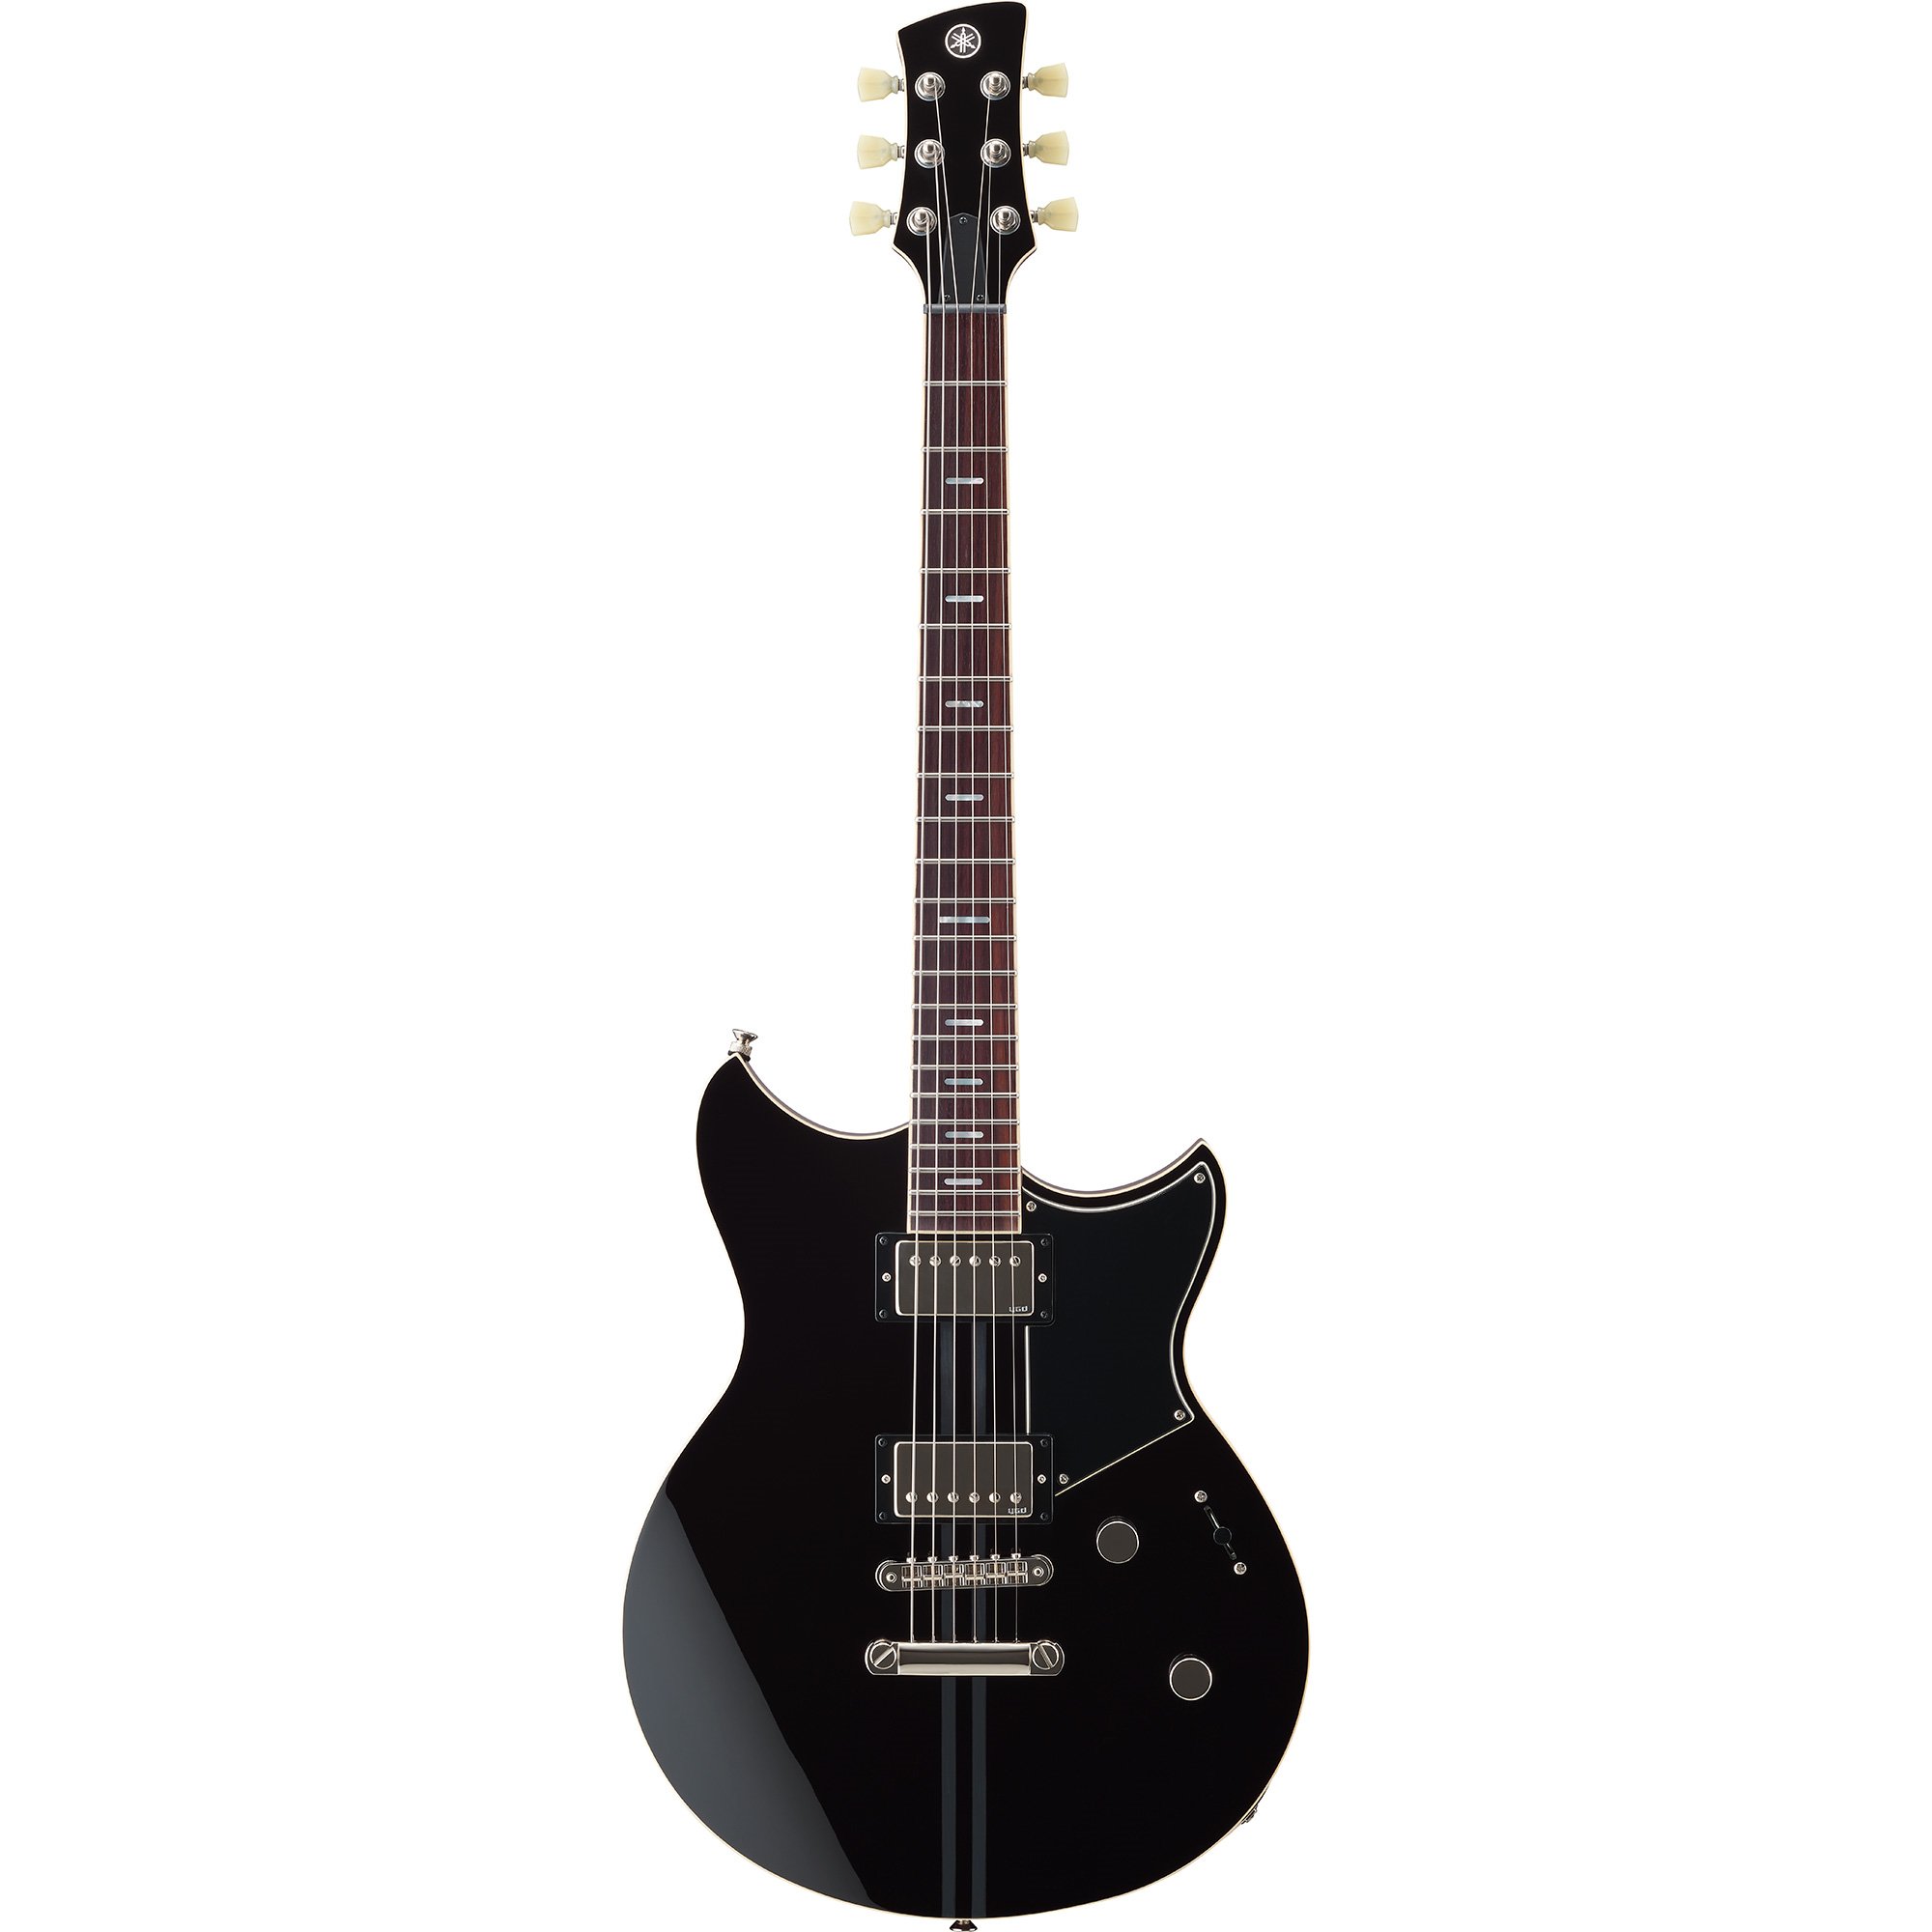 RSS20 Revstar Standard Electric Guitar